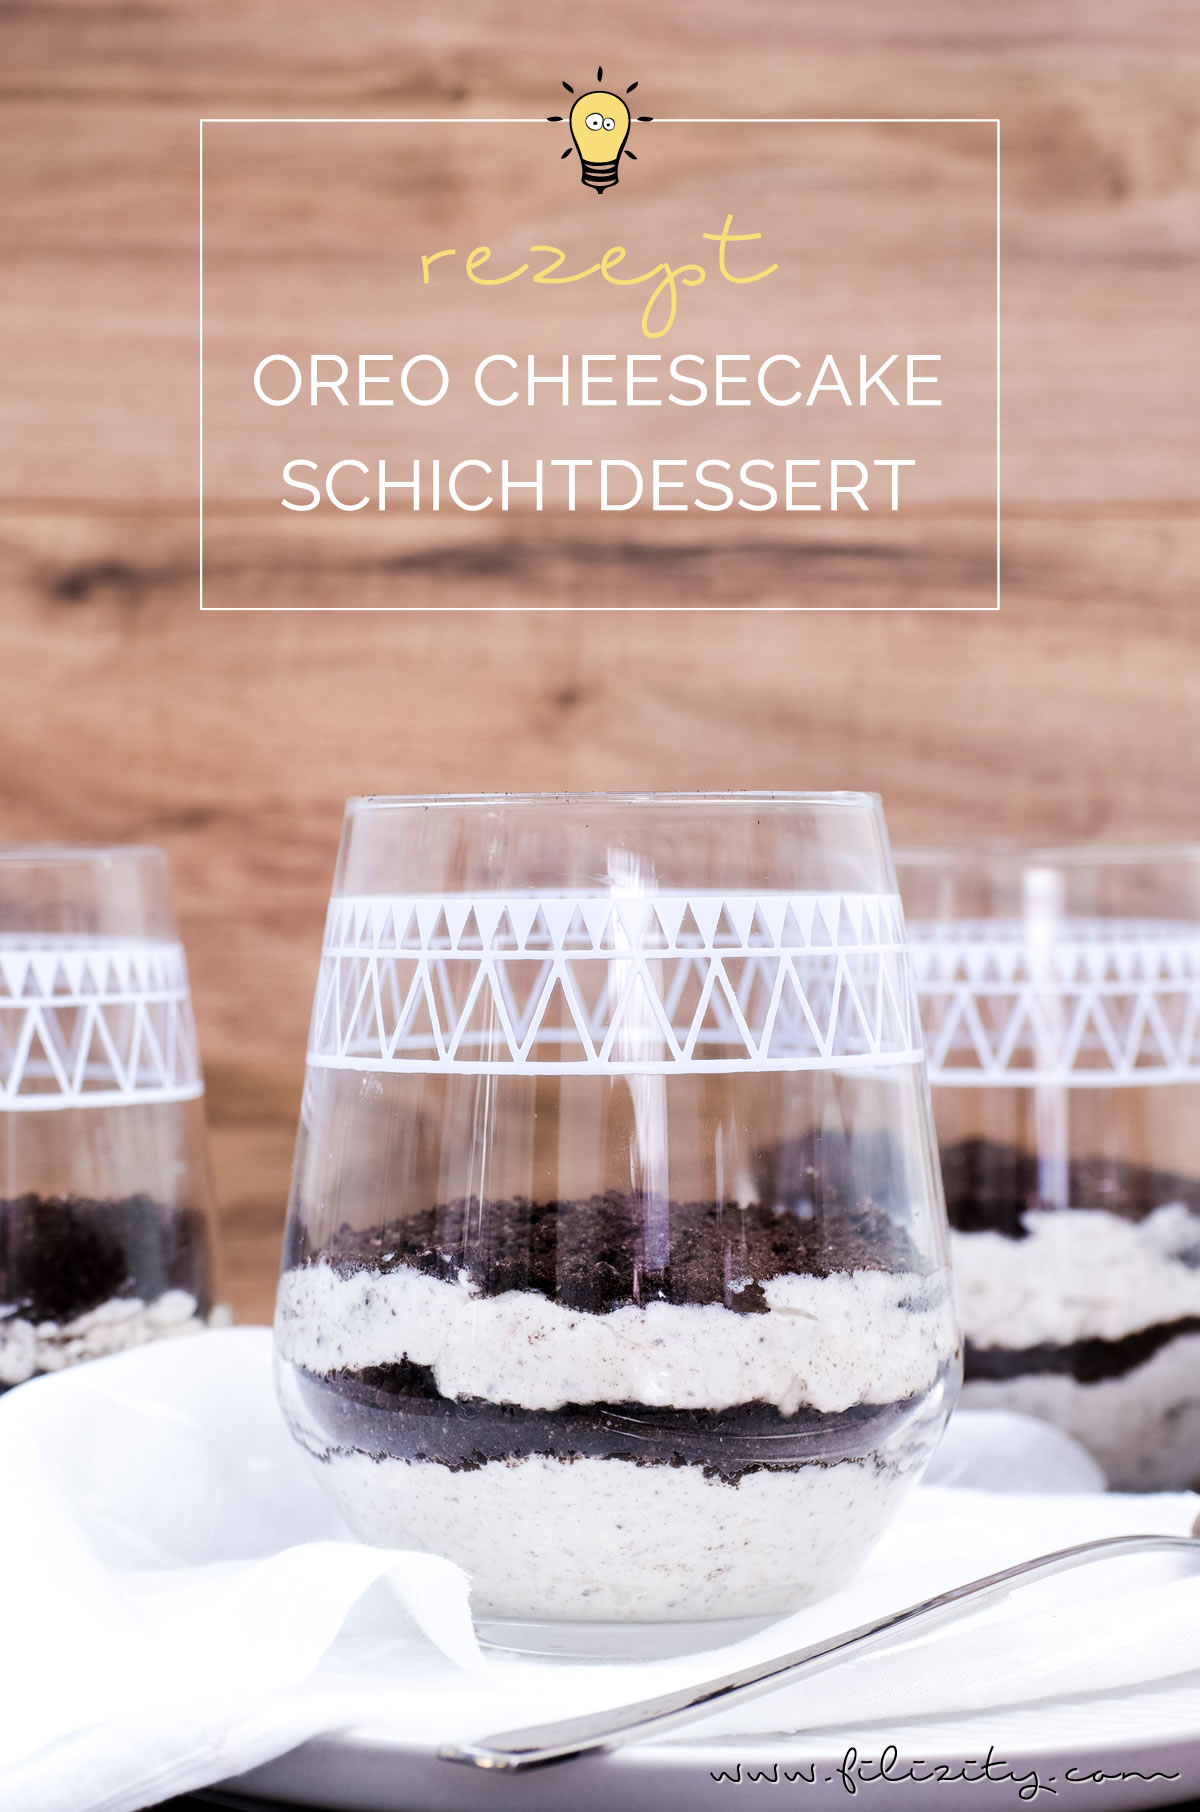 Rezept für No bake Oreo Cheesecake Schichtdessert im Glas | Filizity.com | Food-Blog aus dem Rheinland #oreo #cheesecake #dessert